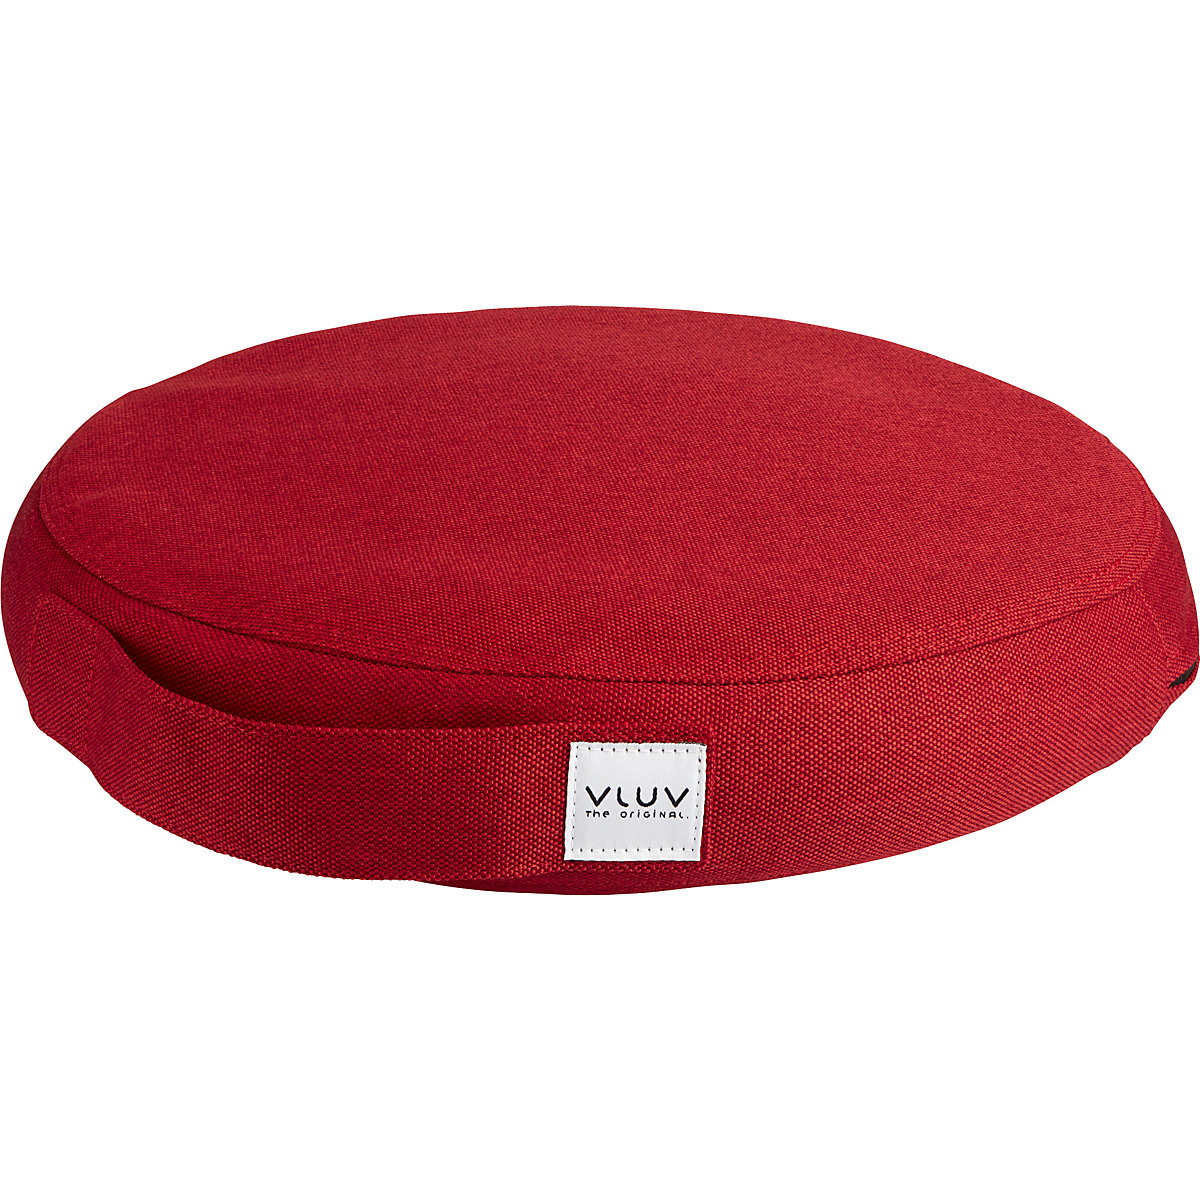 Coussin d'équilibre PIL&PED LEIV – VLUV, avec habillage tissu, Ø 360 mm, rouge rubis-12